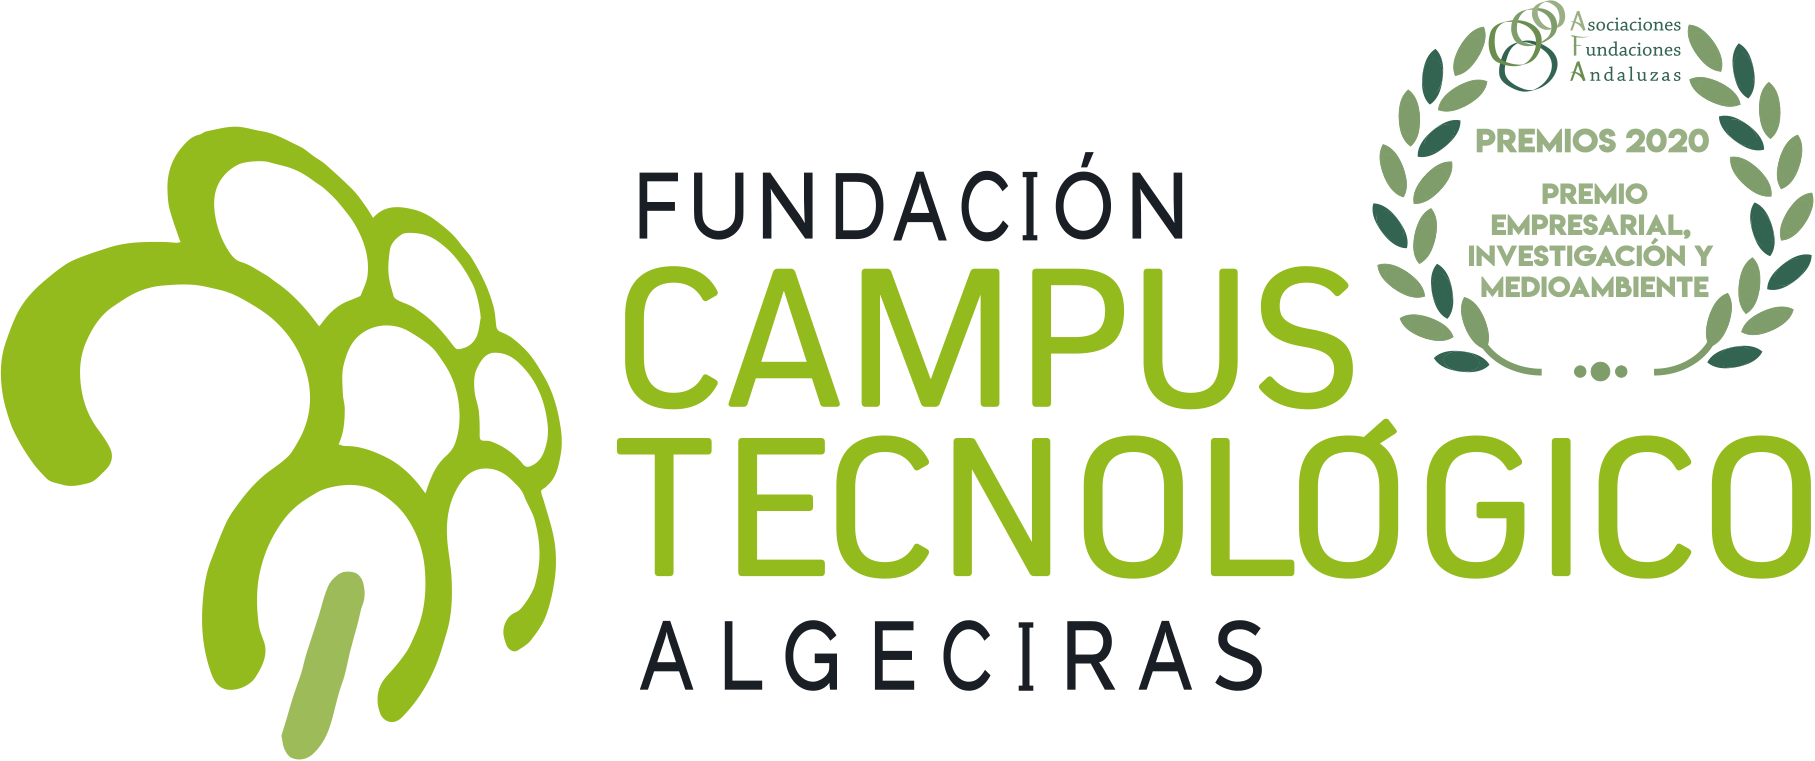 Fundación Campus Tecnológico Algeciras